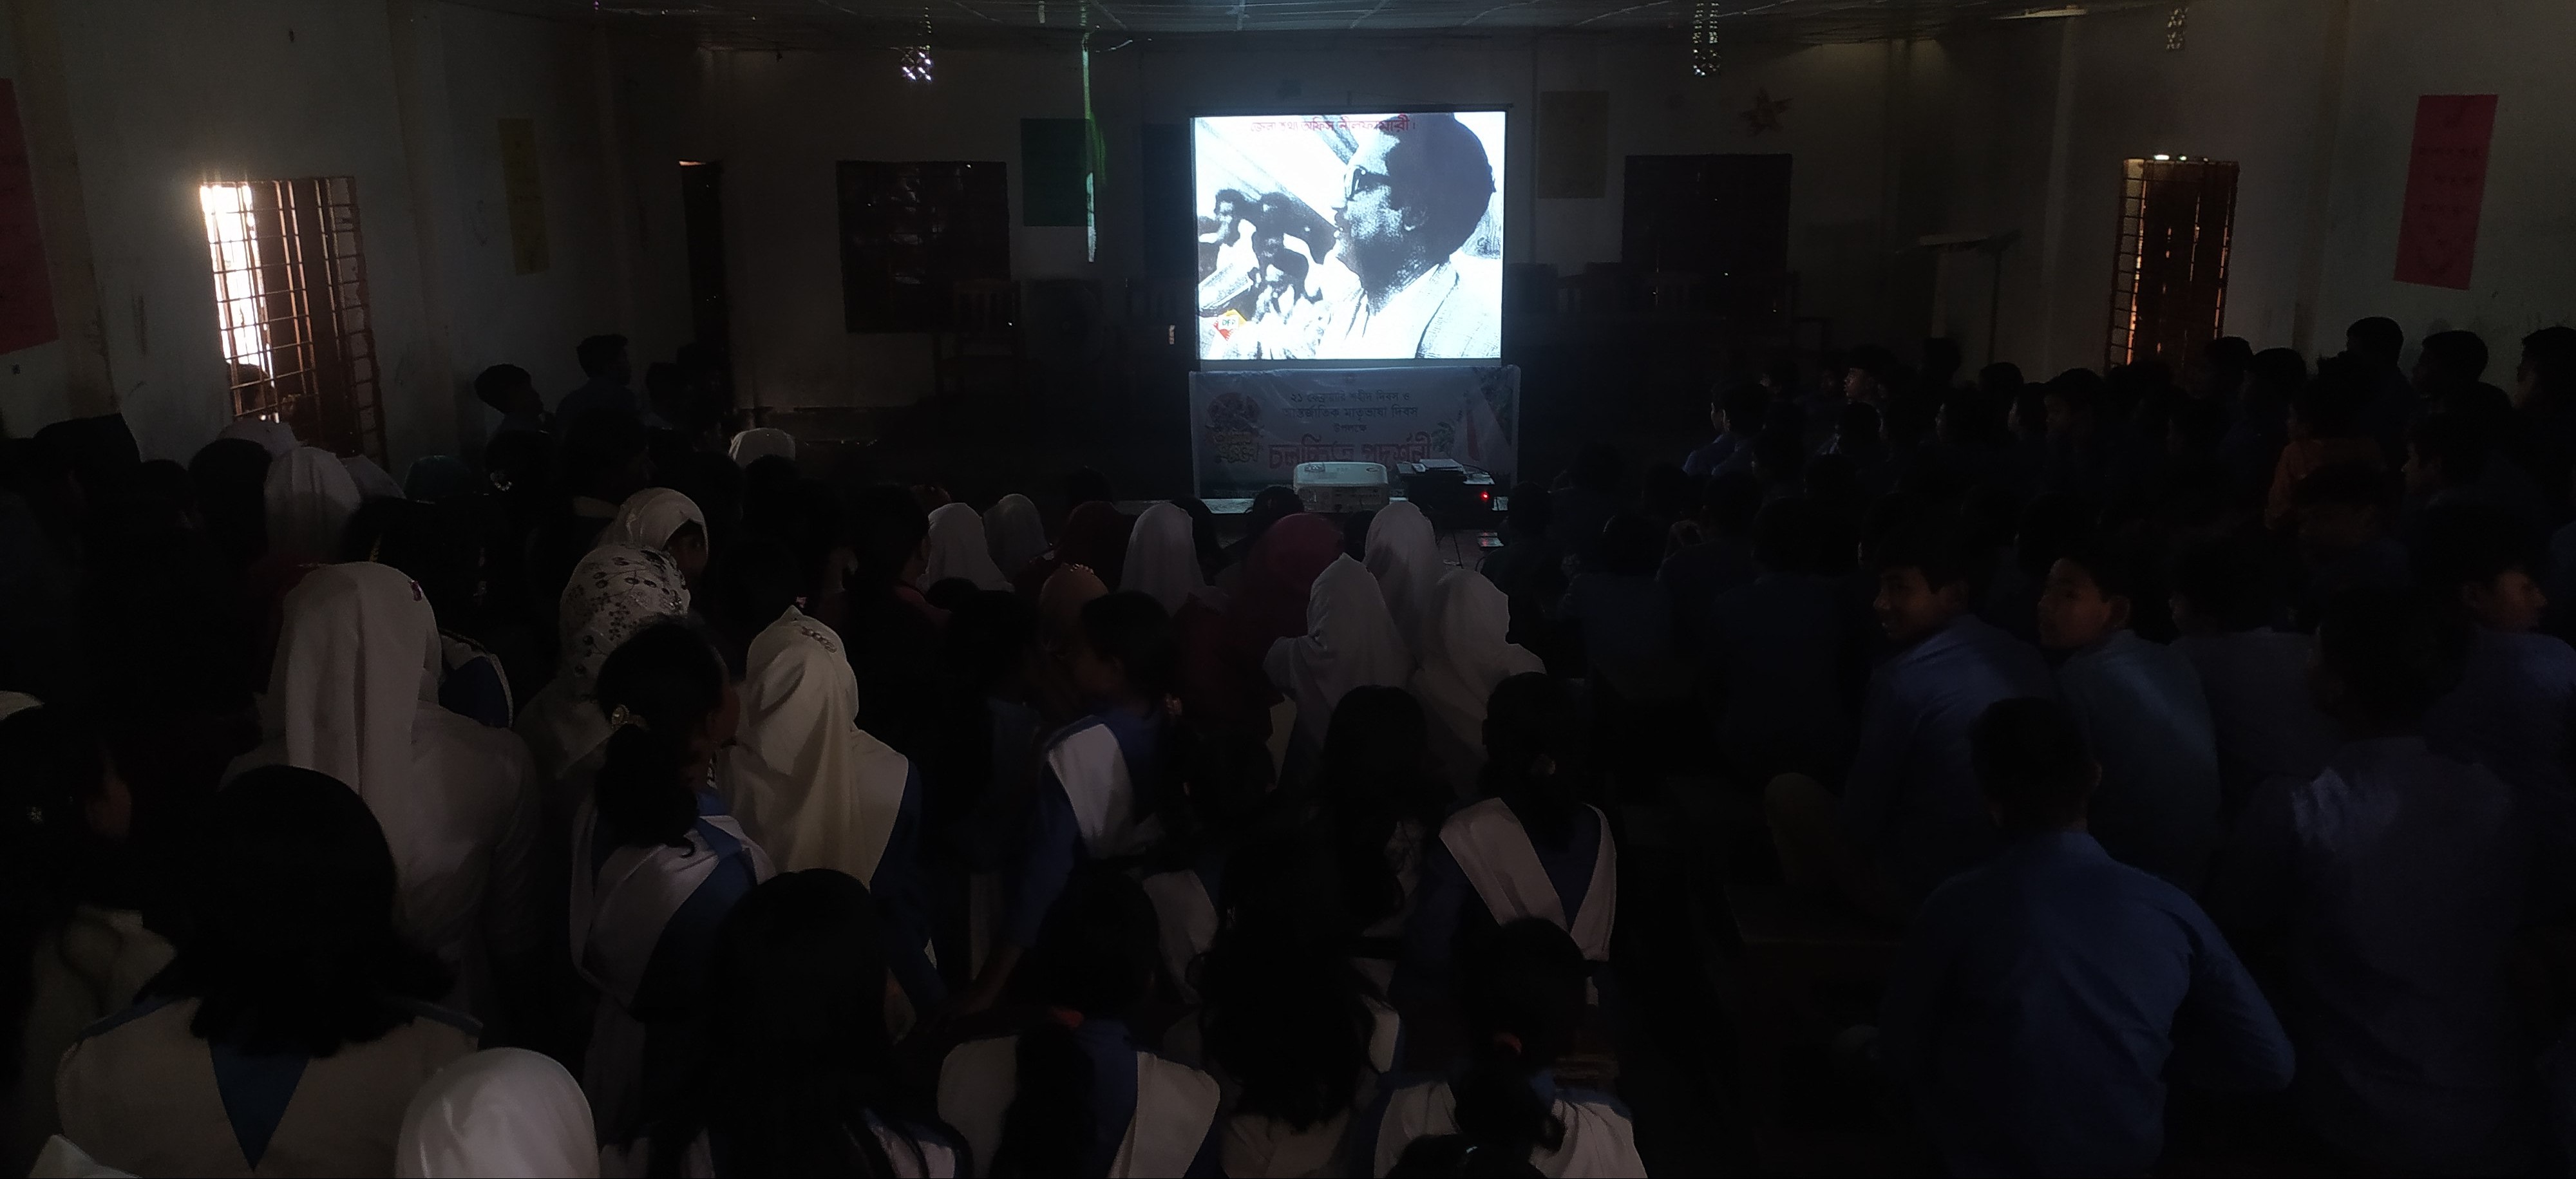 শহিদ দিবস ও আন্তর্জাতিক মাতৃভাষা দিবস উপলক্ষে  চলচ্চিত্র প্রদর্শনী